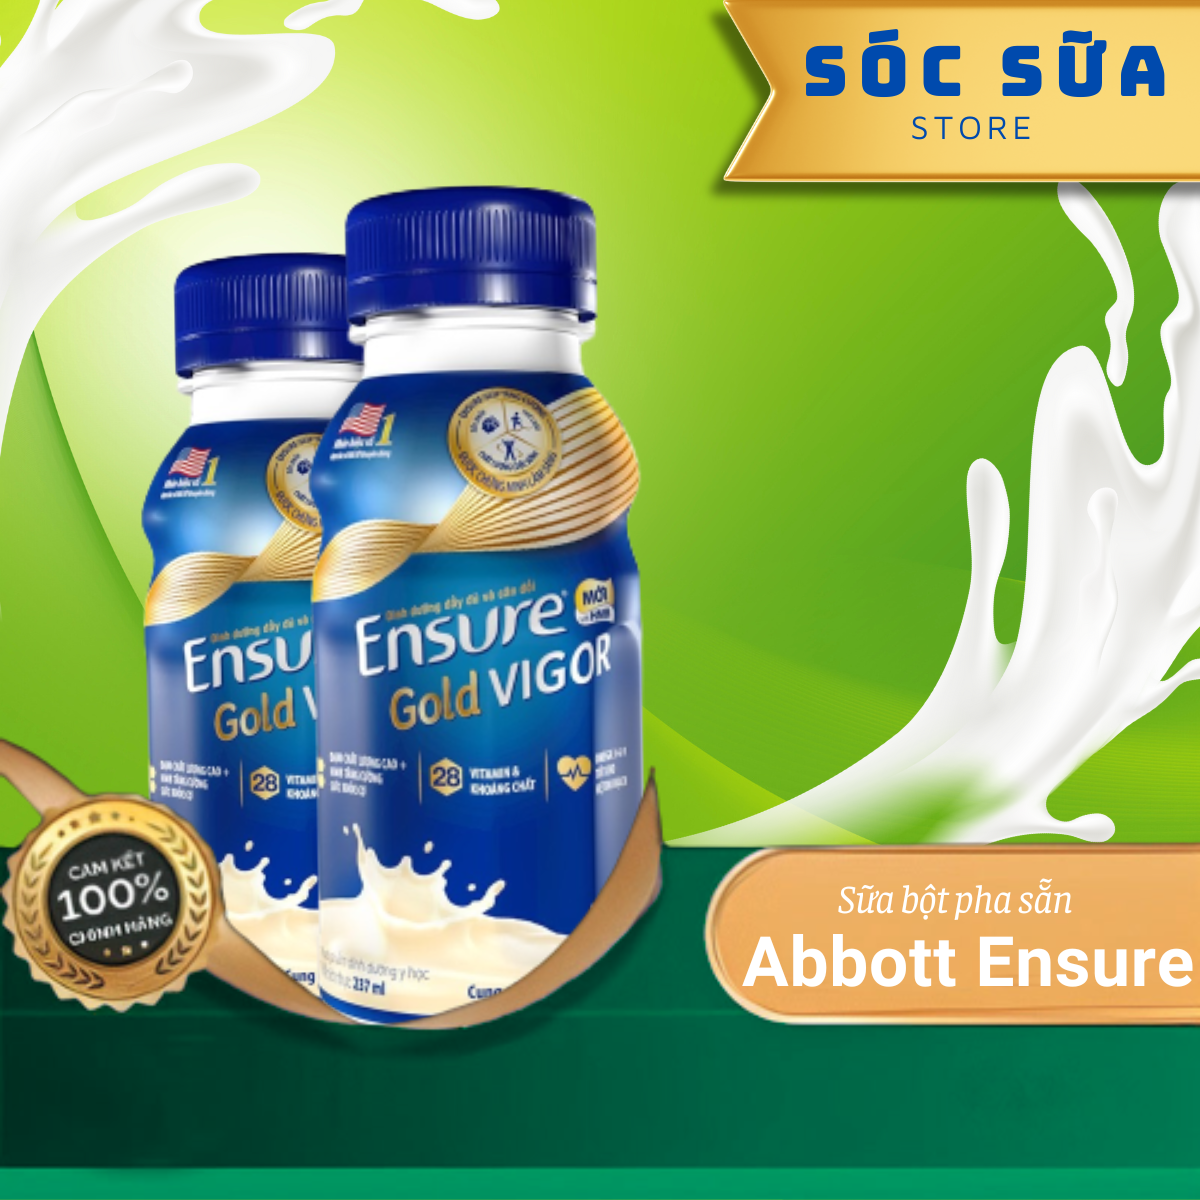 Sữa Bột Pha Sẵn Abbott Ensure Gold Vigor Hương Vani Lốc 6 Chai x 237ml